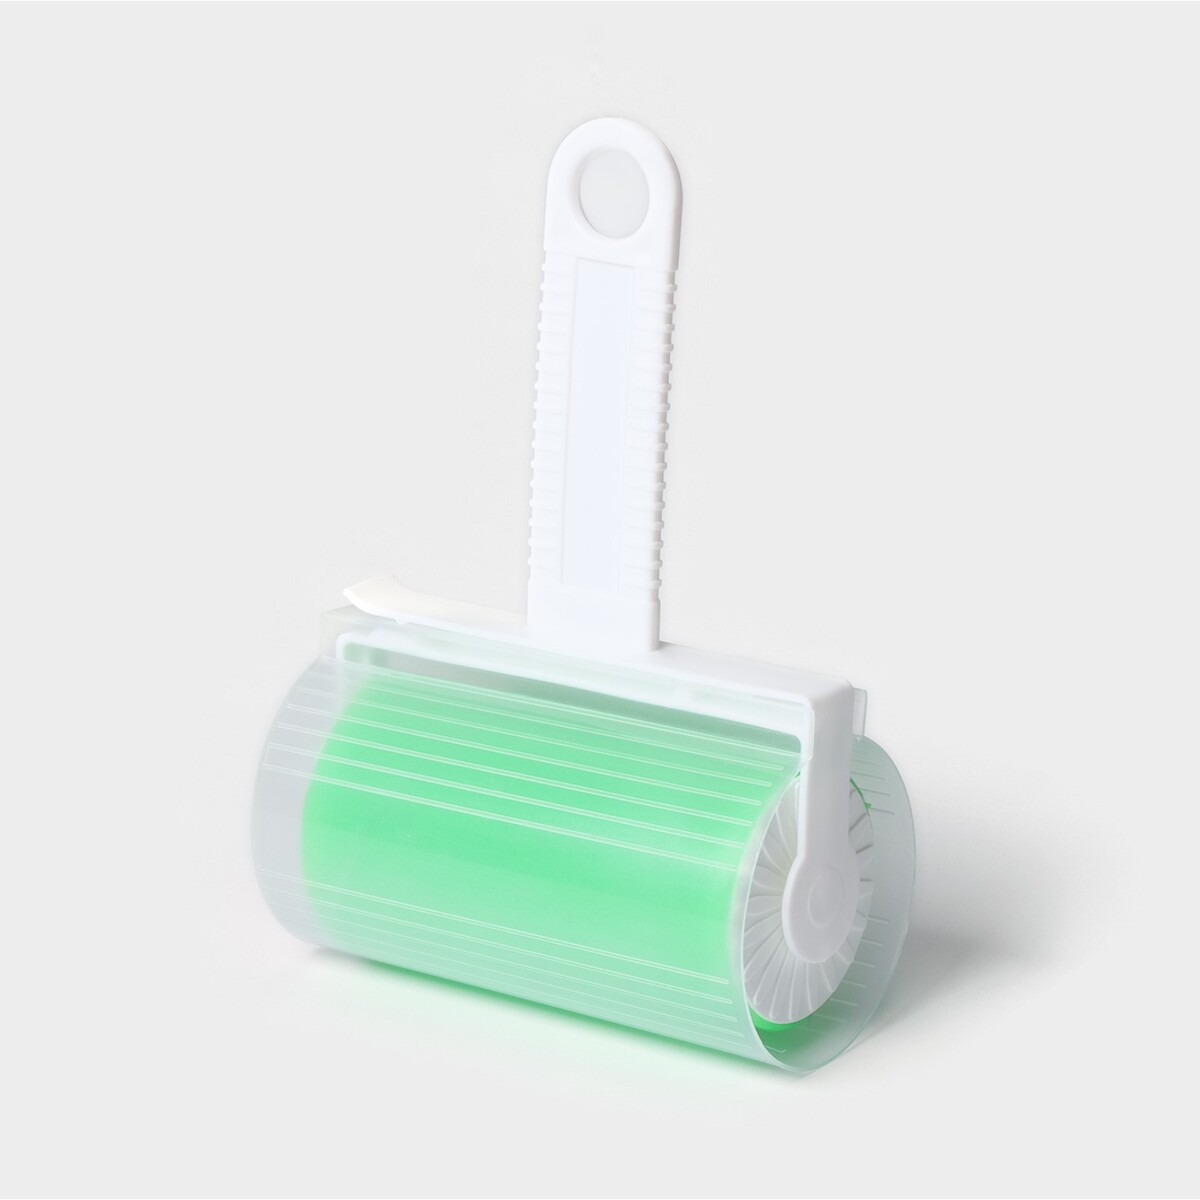 Ролик для чистки одежды в футляре силиконовый, 17×11×6 см, цвет зеленый ролик для чистки одежды paul masquin 36 листов